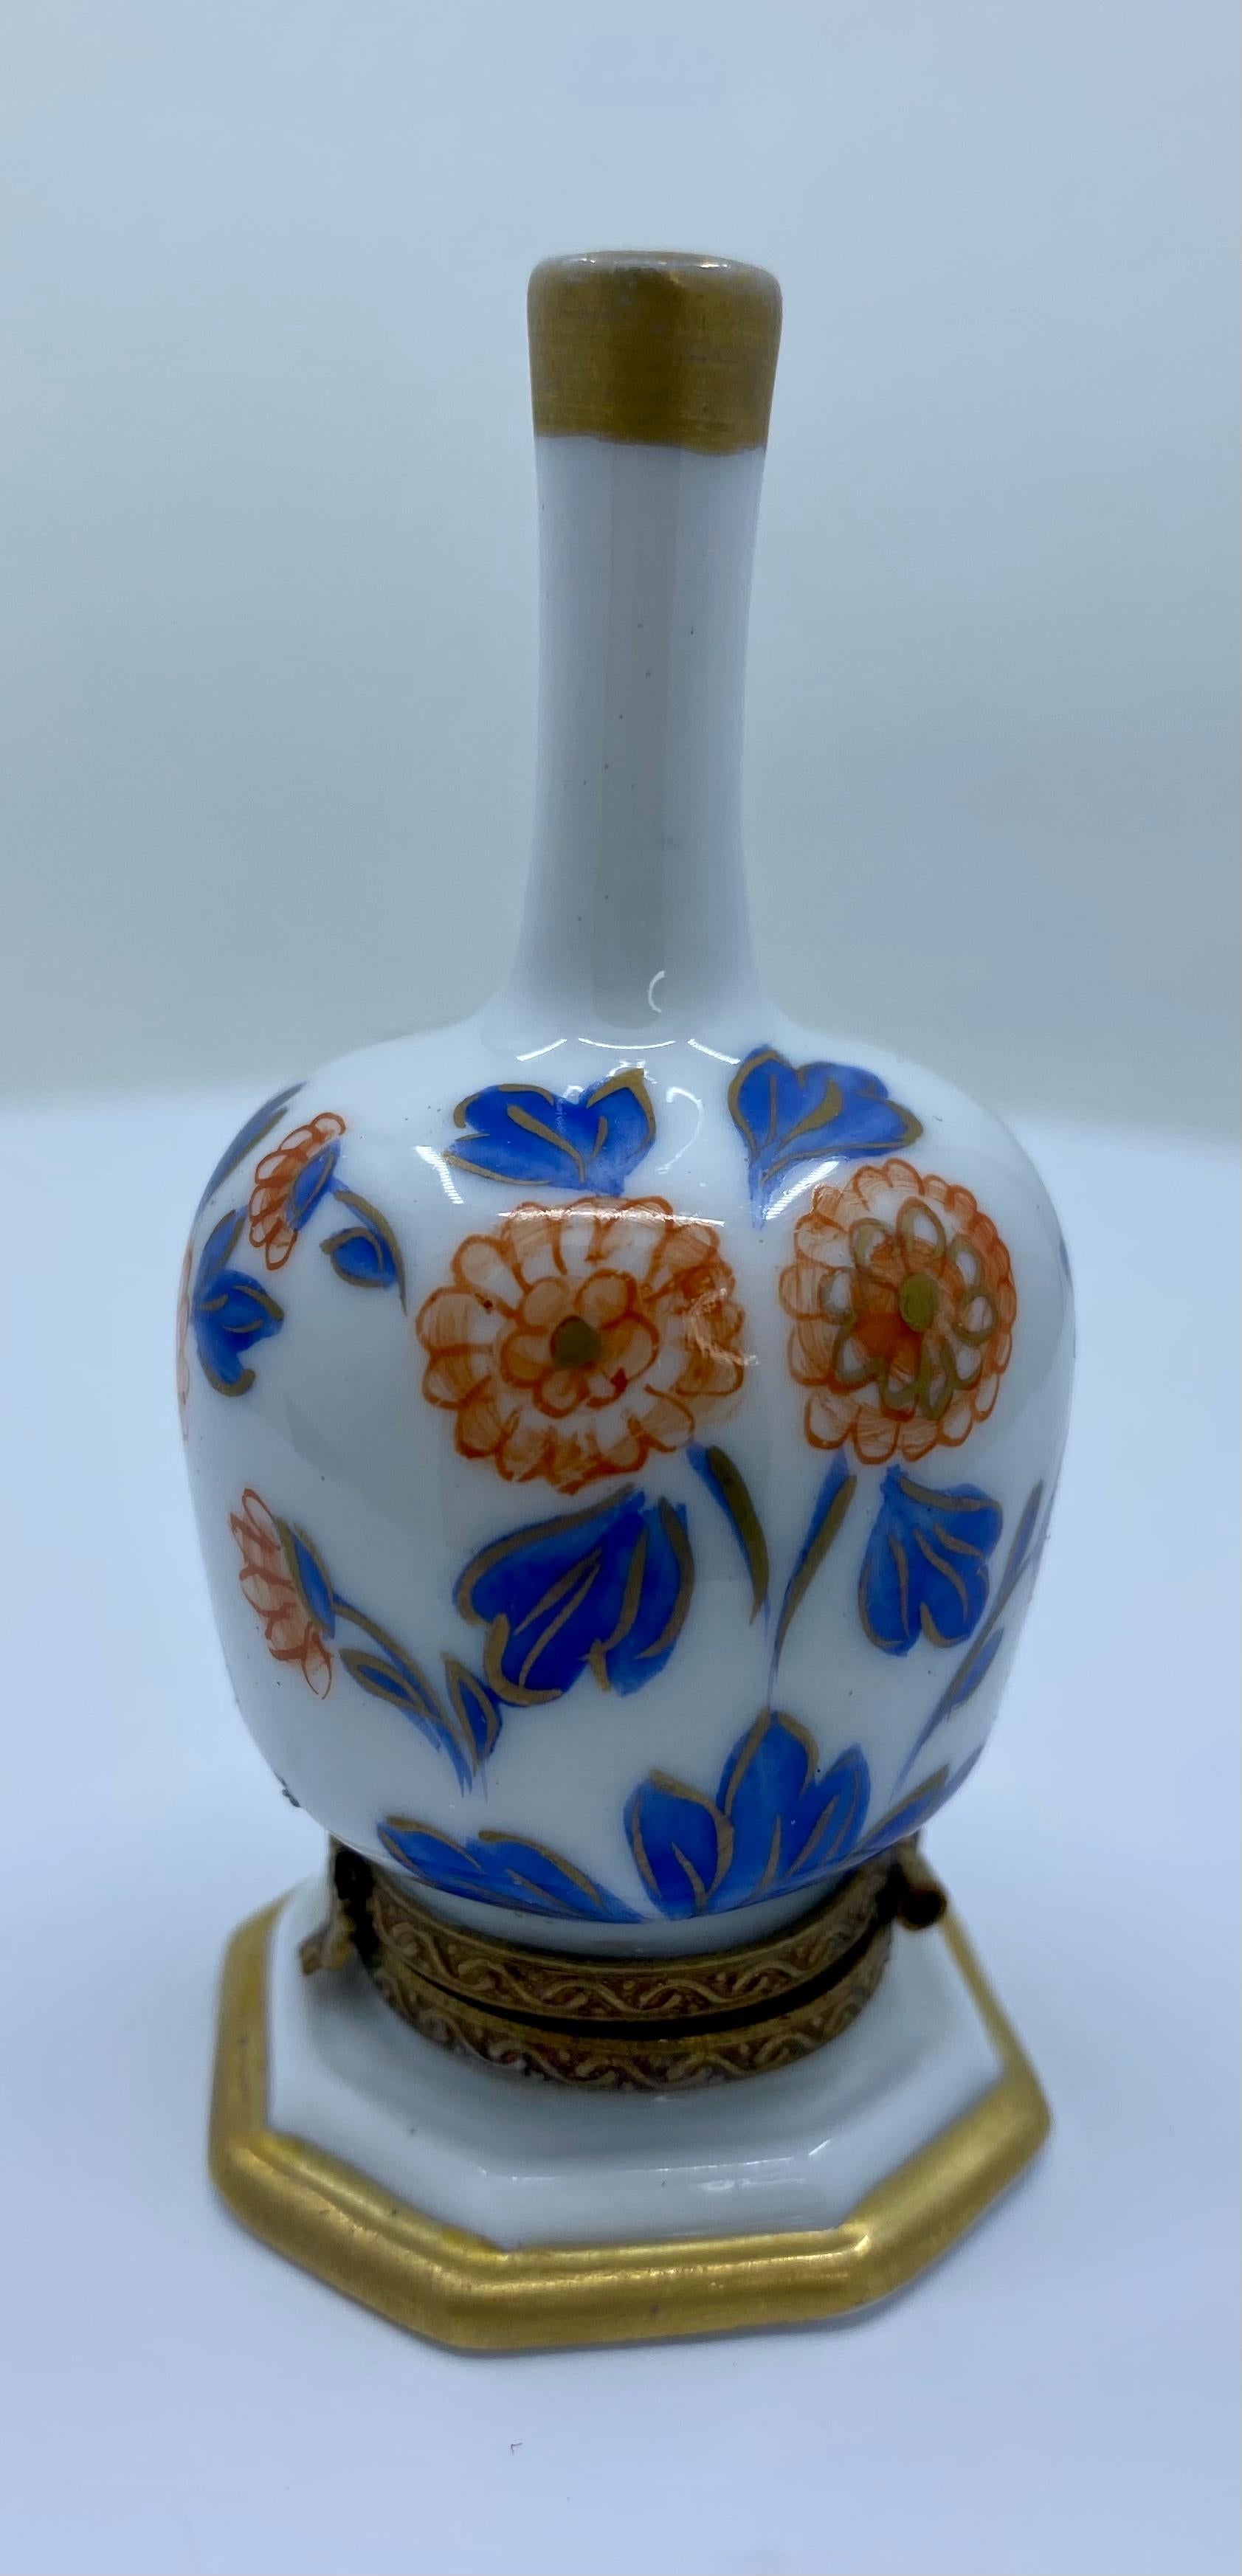 Die Miniatur-Schmuckdose aus Limoges-Porzellan ist ein einzigartiges Sammlerstück und wird in Frankreich handgefertigt und handbemalt. Es verfügt über schöne blaue und orangefarbene Blumen und Blätter mit einem Hauch von Gold, die den langen Hals